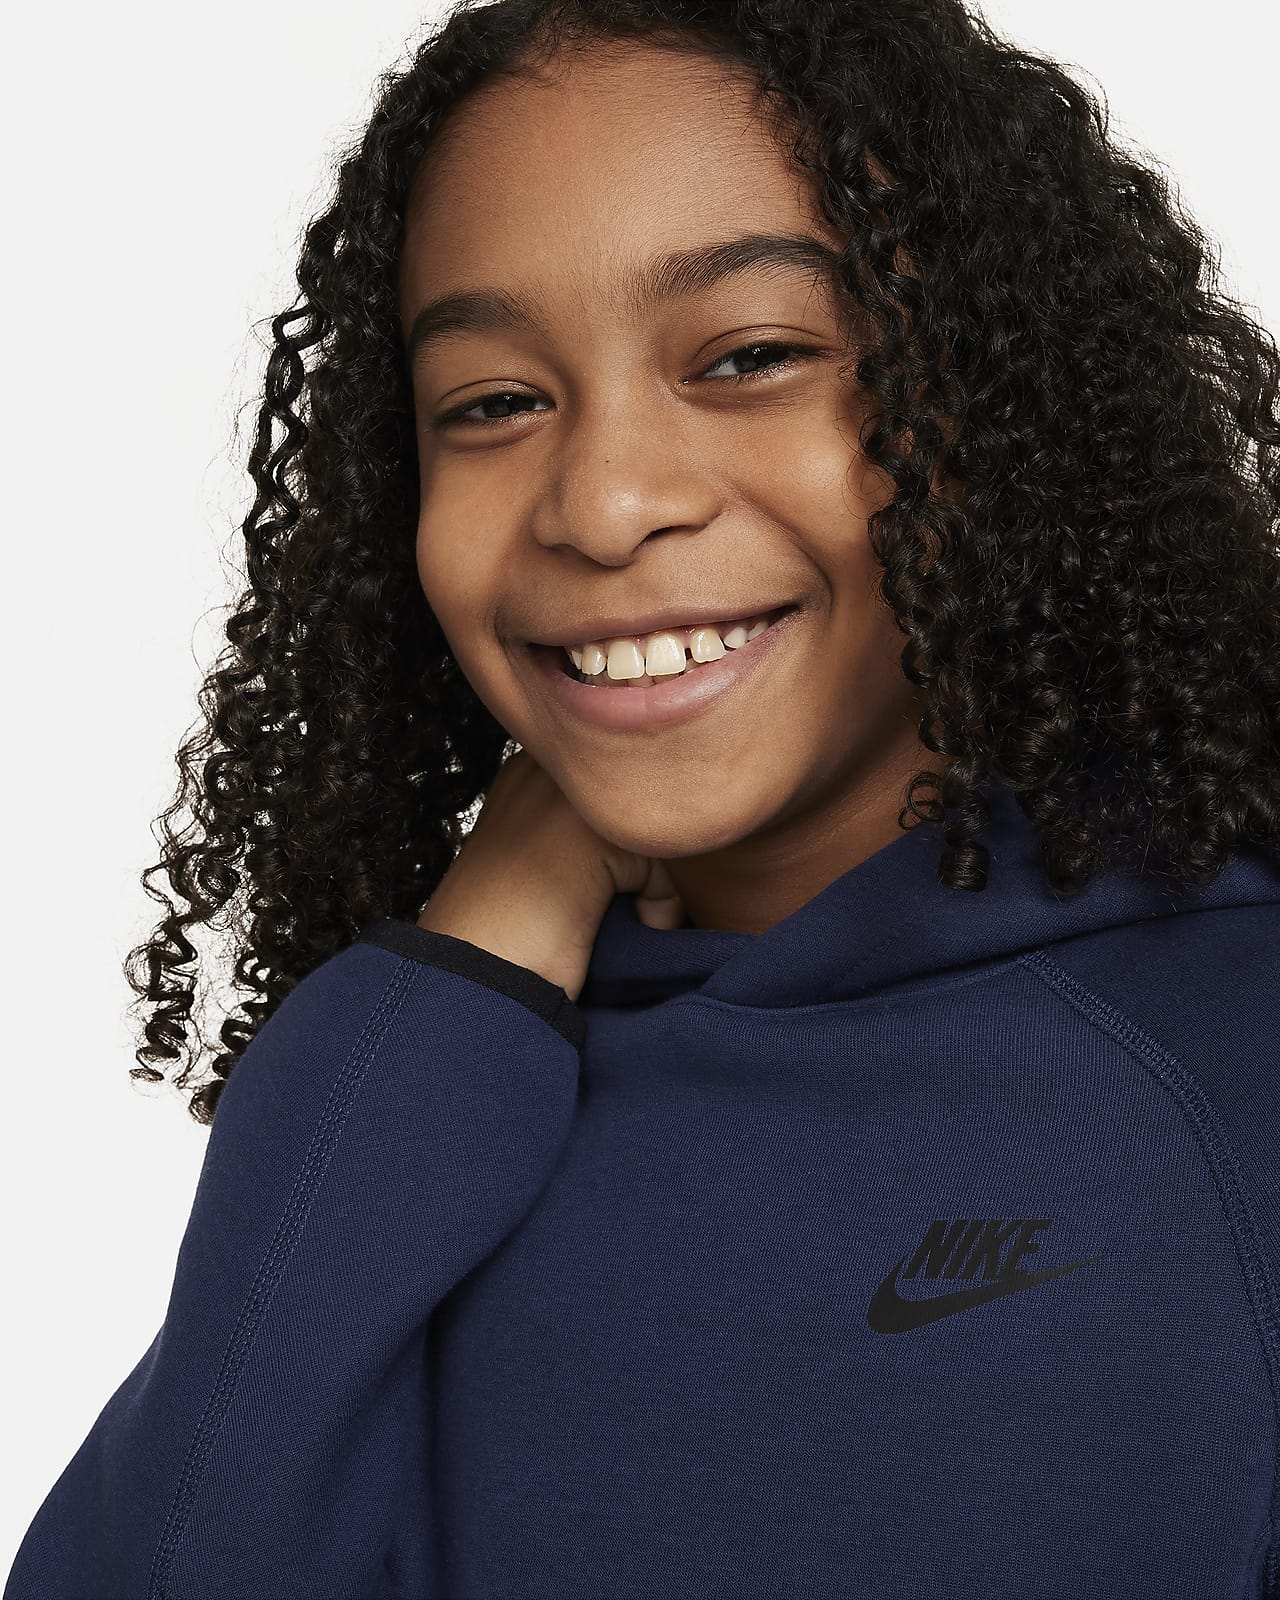 Nike Sportswear Tech Fleece Big Kids' (Boys') Hoodie.